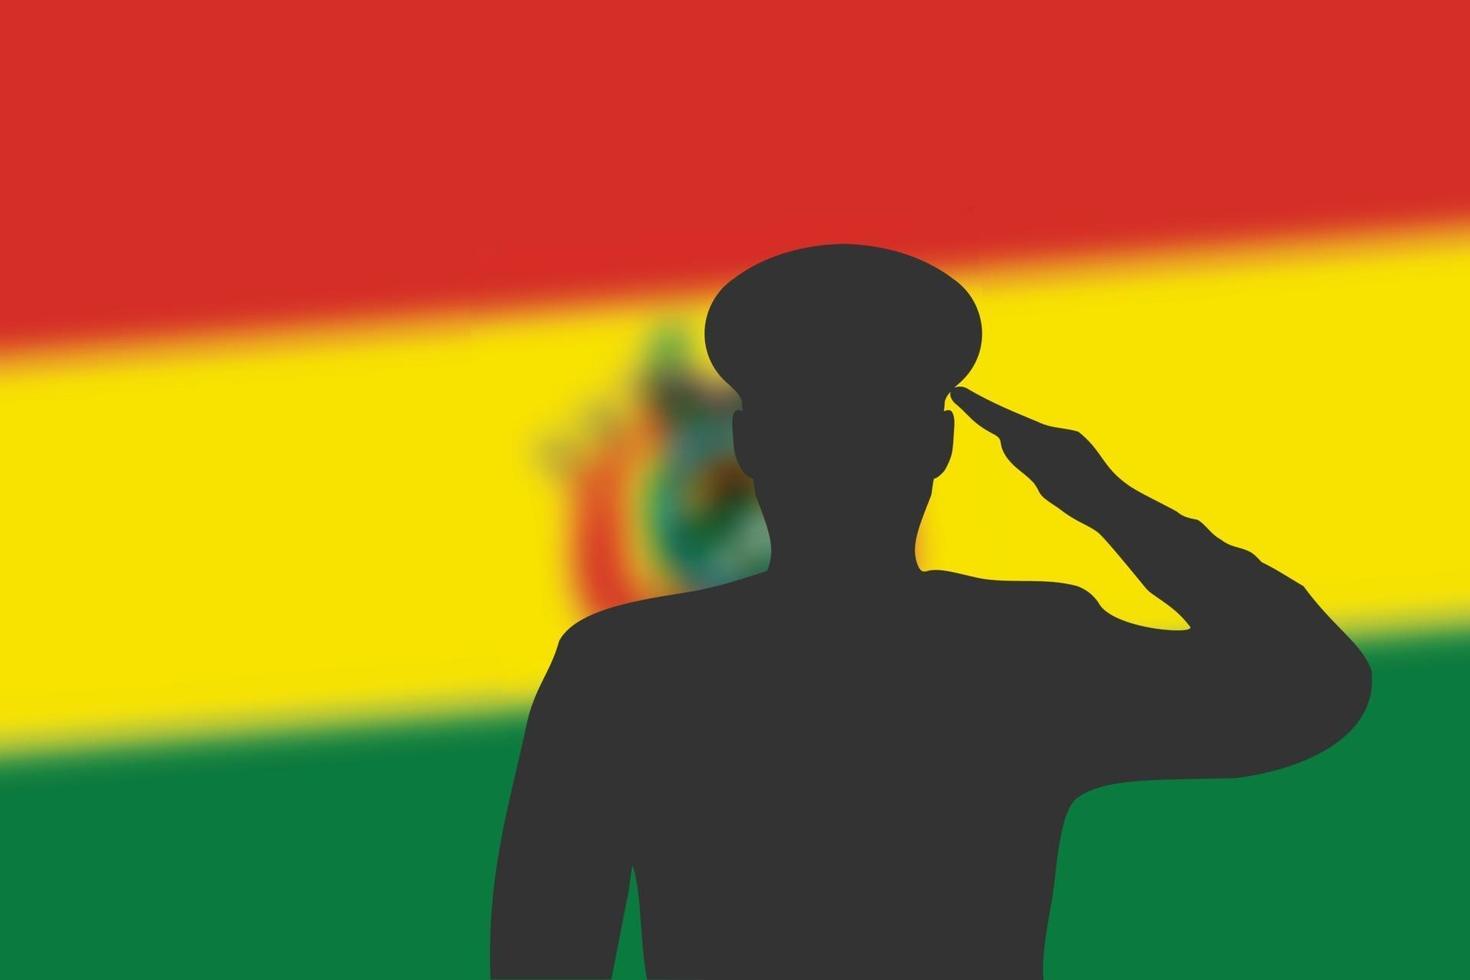 Lötsilhouette auf unscharfem Hintergrund mit Bolivien-Flagge. vektor